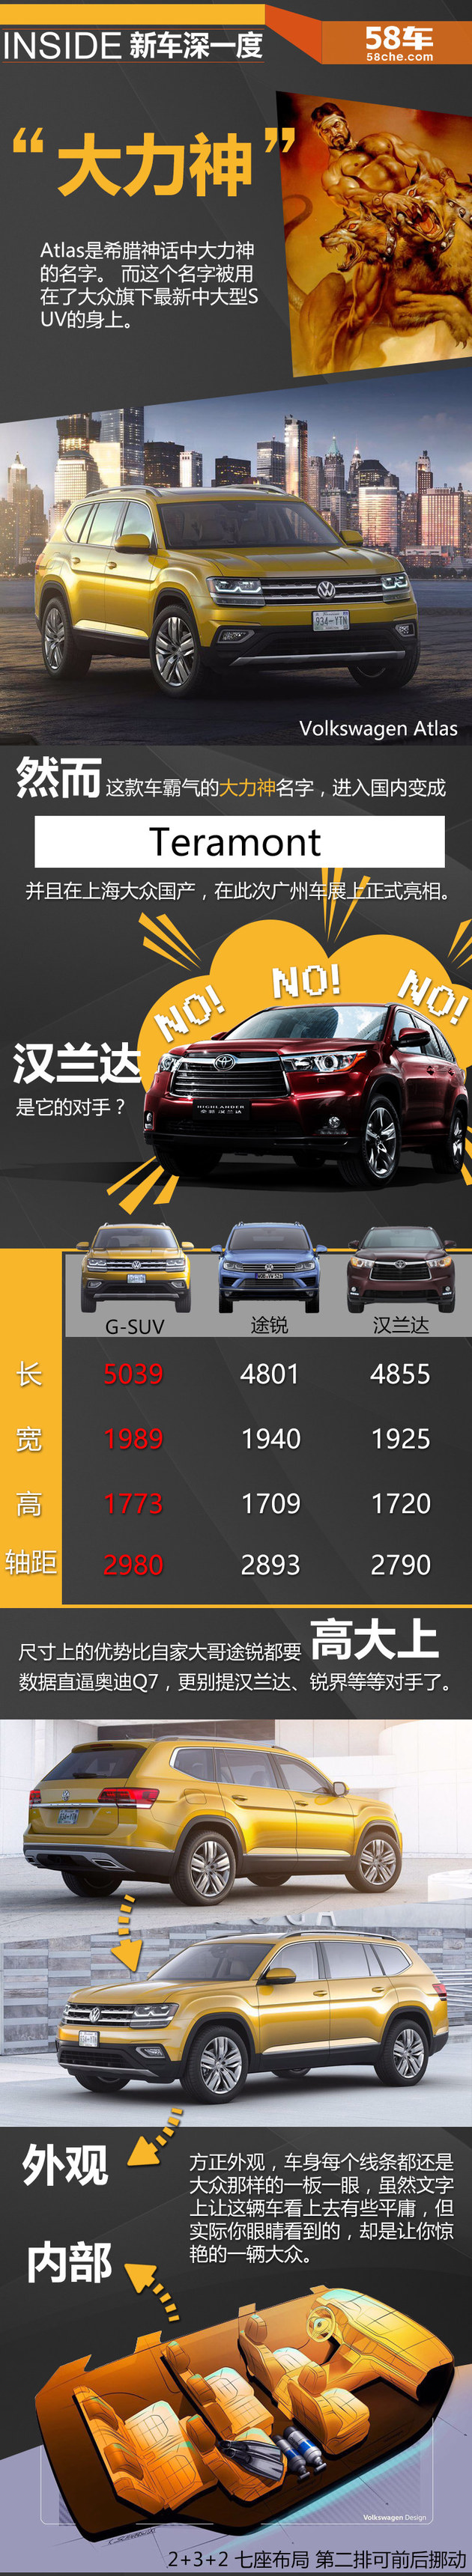 2016广州车展深一度 大众全新中大型SUV